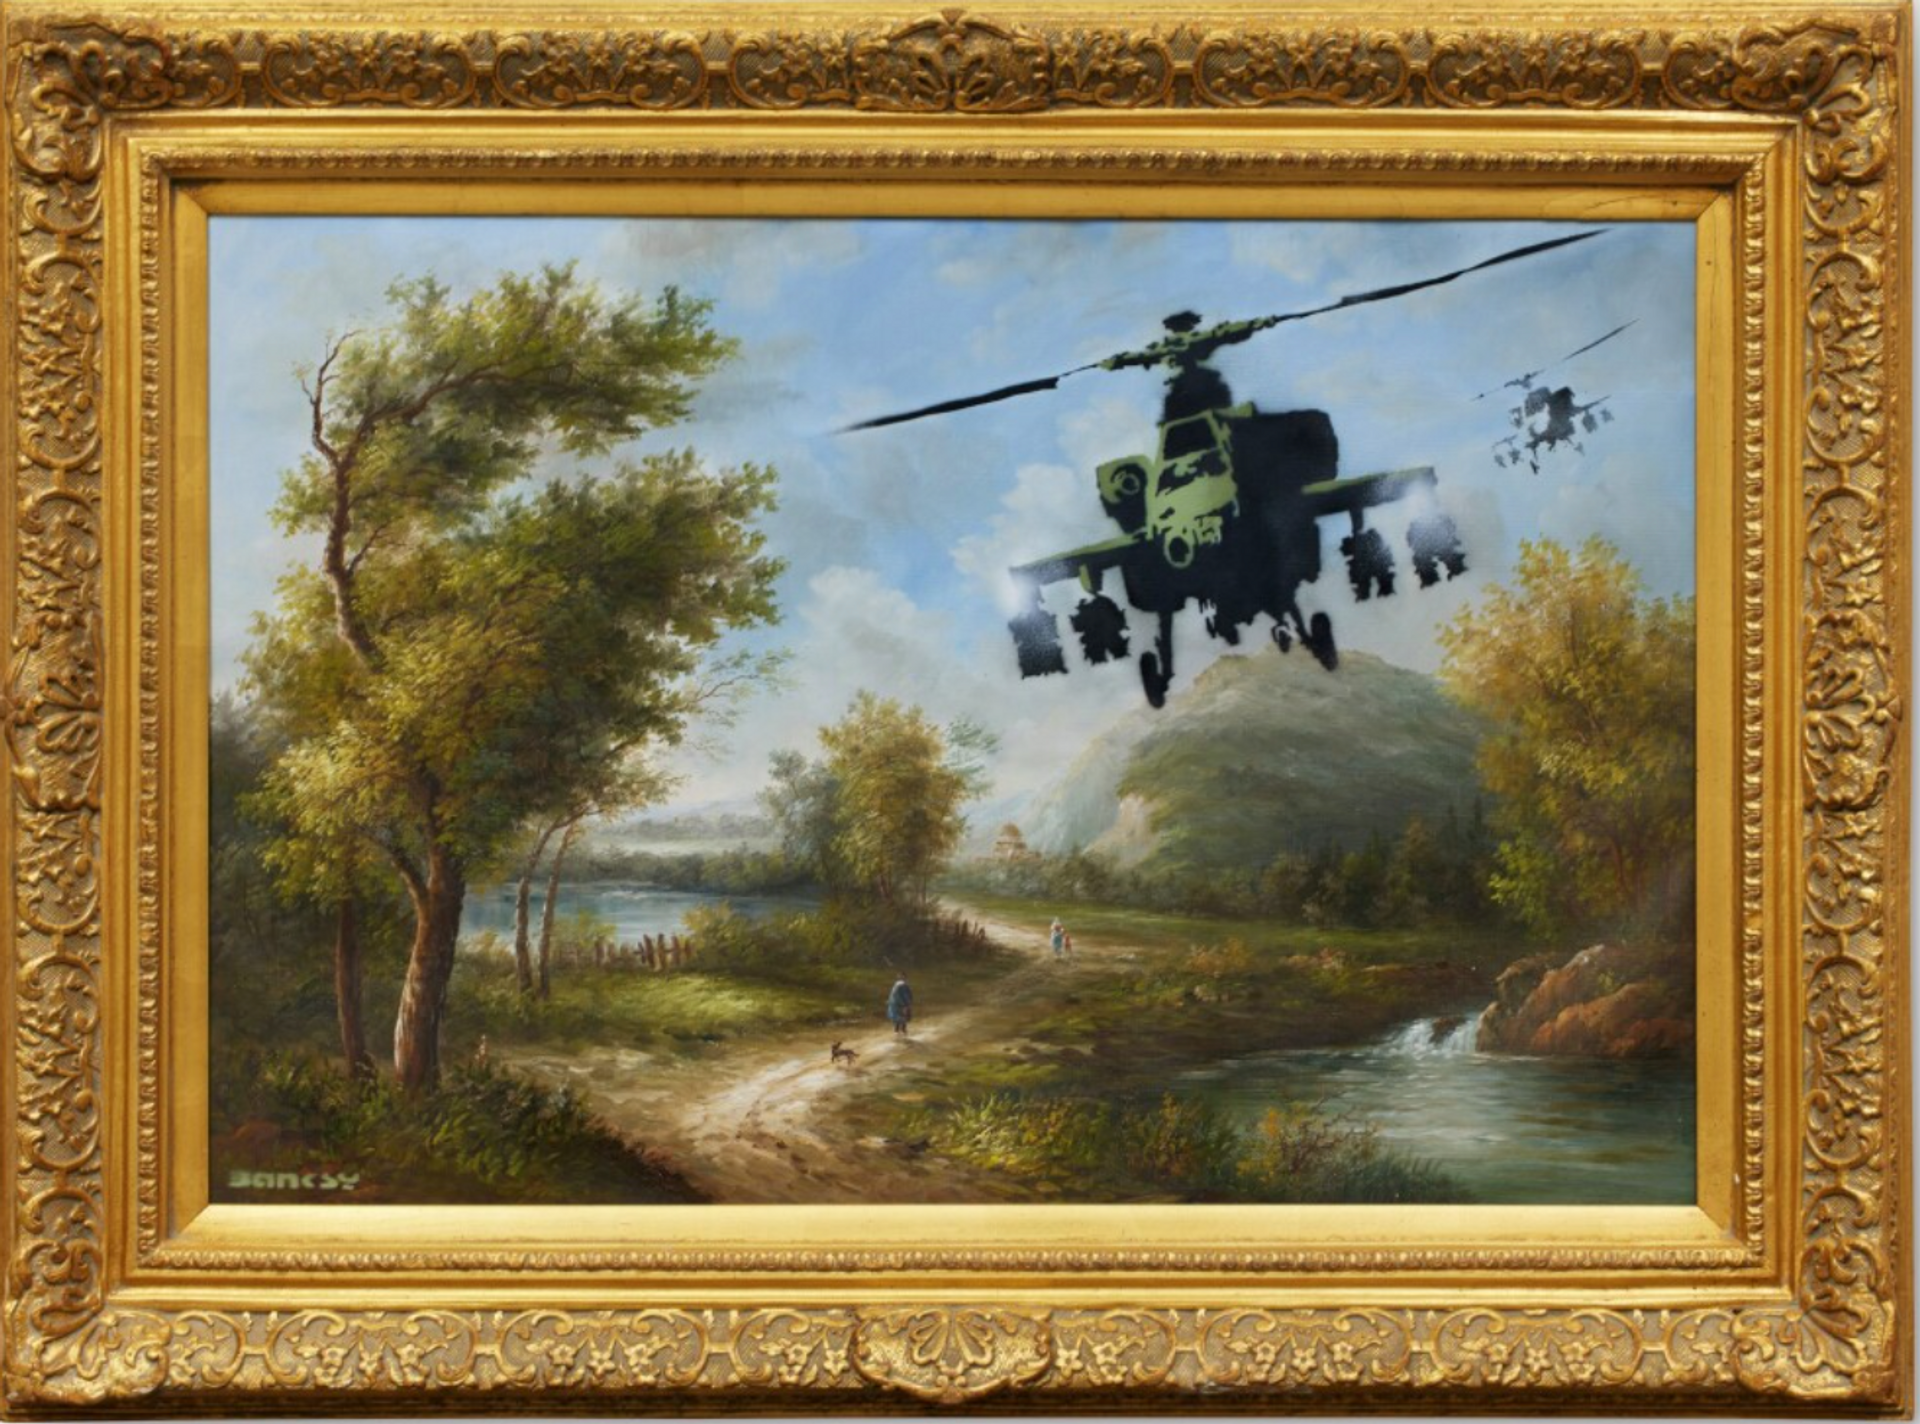 Vandalised Oils (Choppers) by Banksy